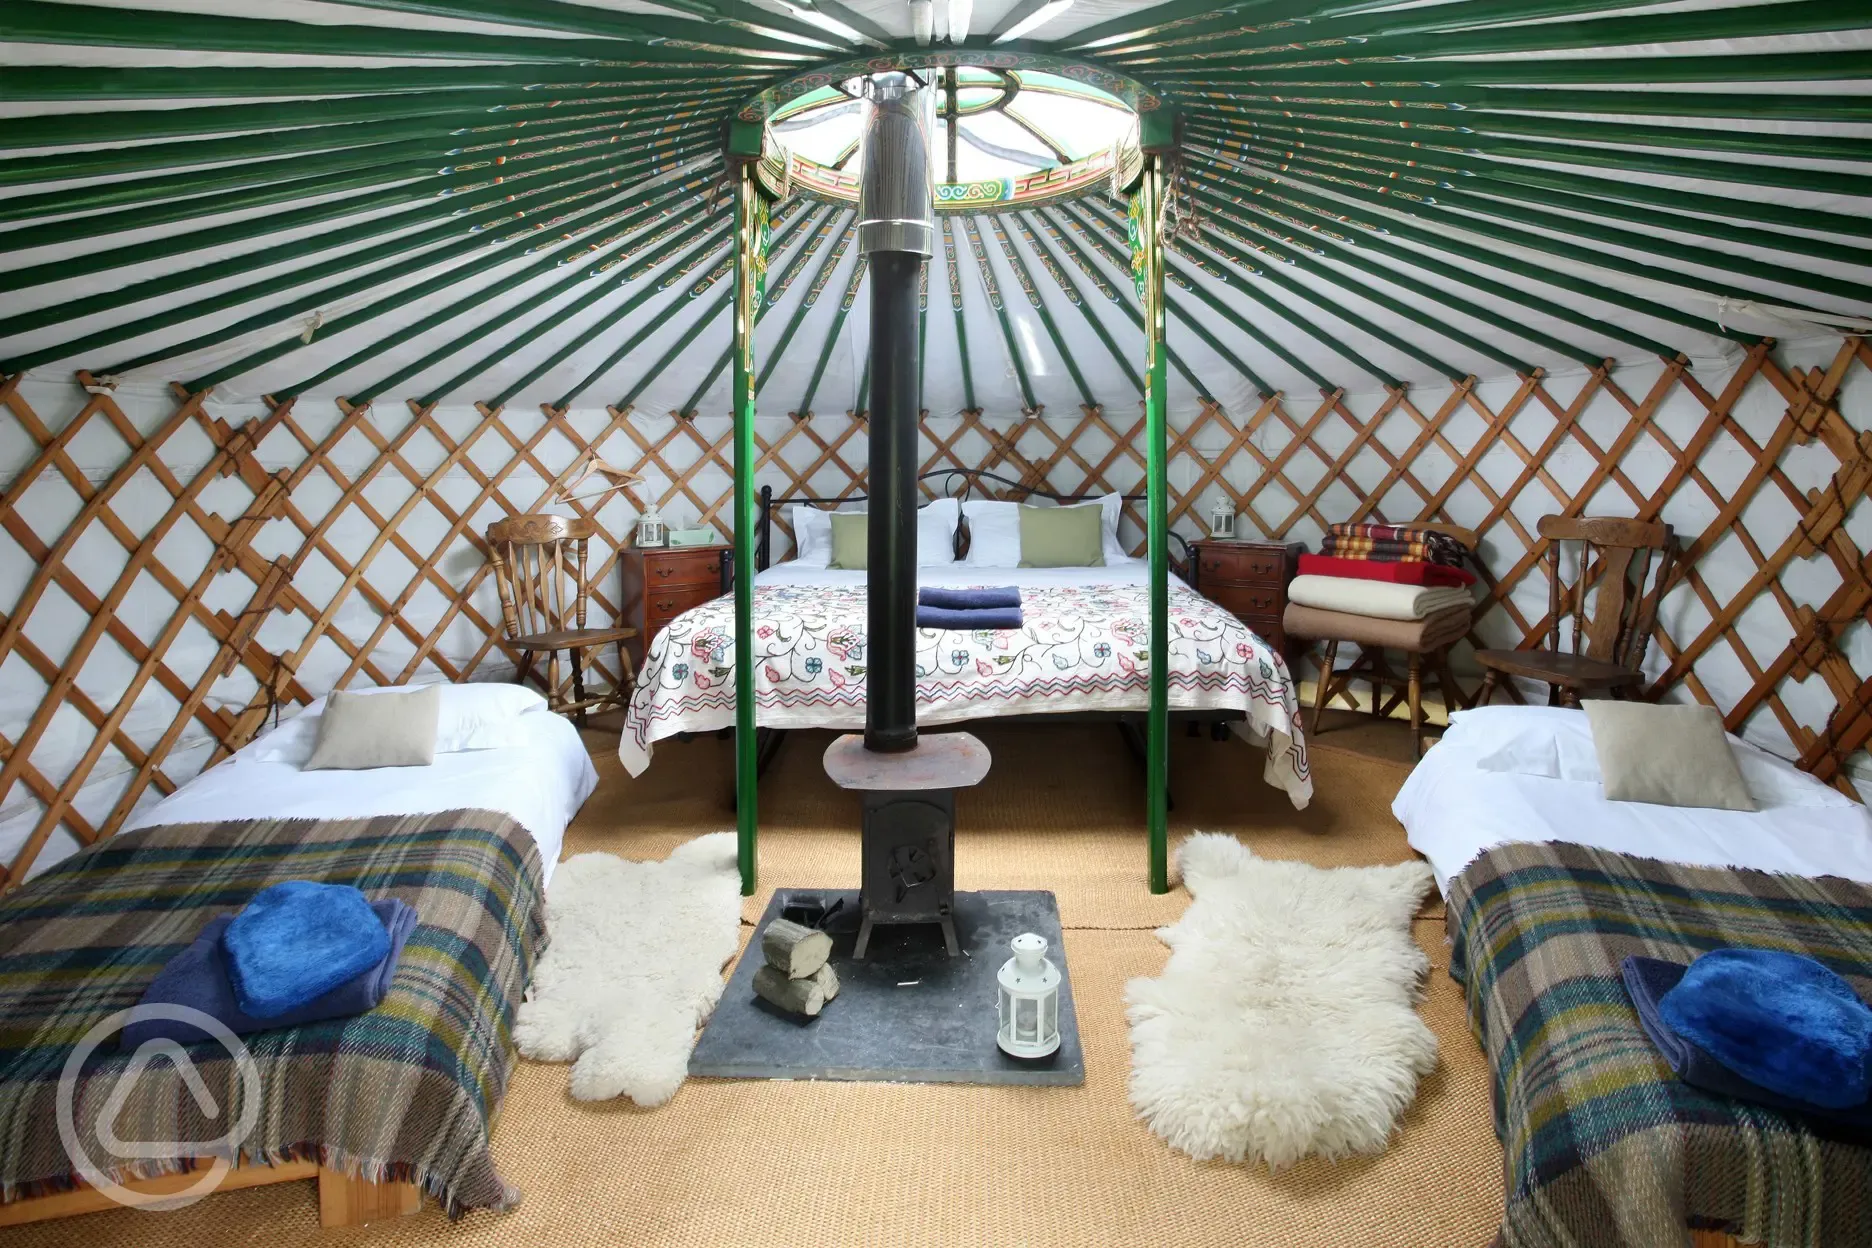 Small yurt interior